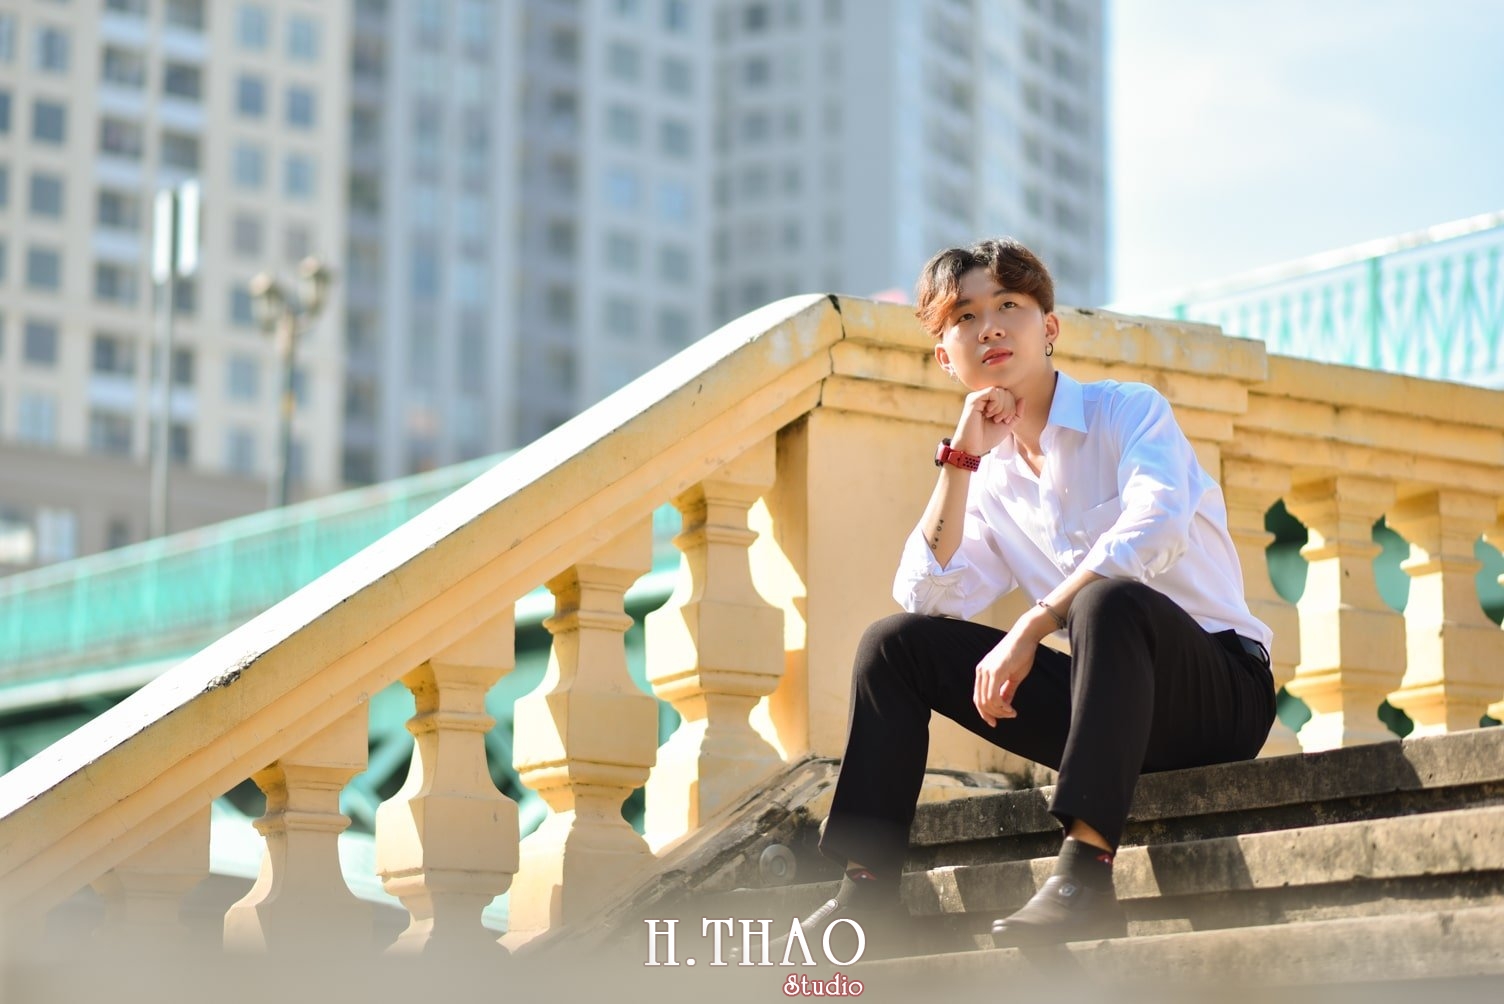 Anh nam buon 8 min - Album chụp ảnh nam phong cách buồn lãng tử - HThao Studio